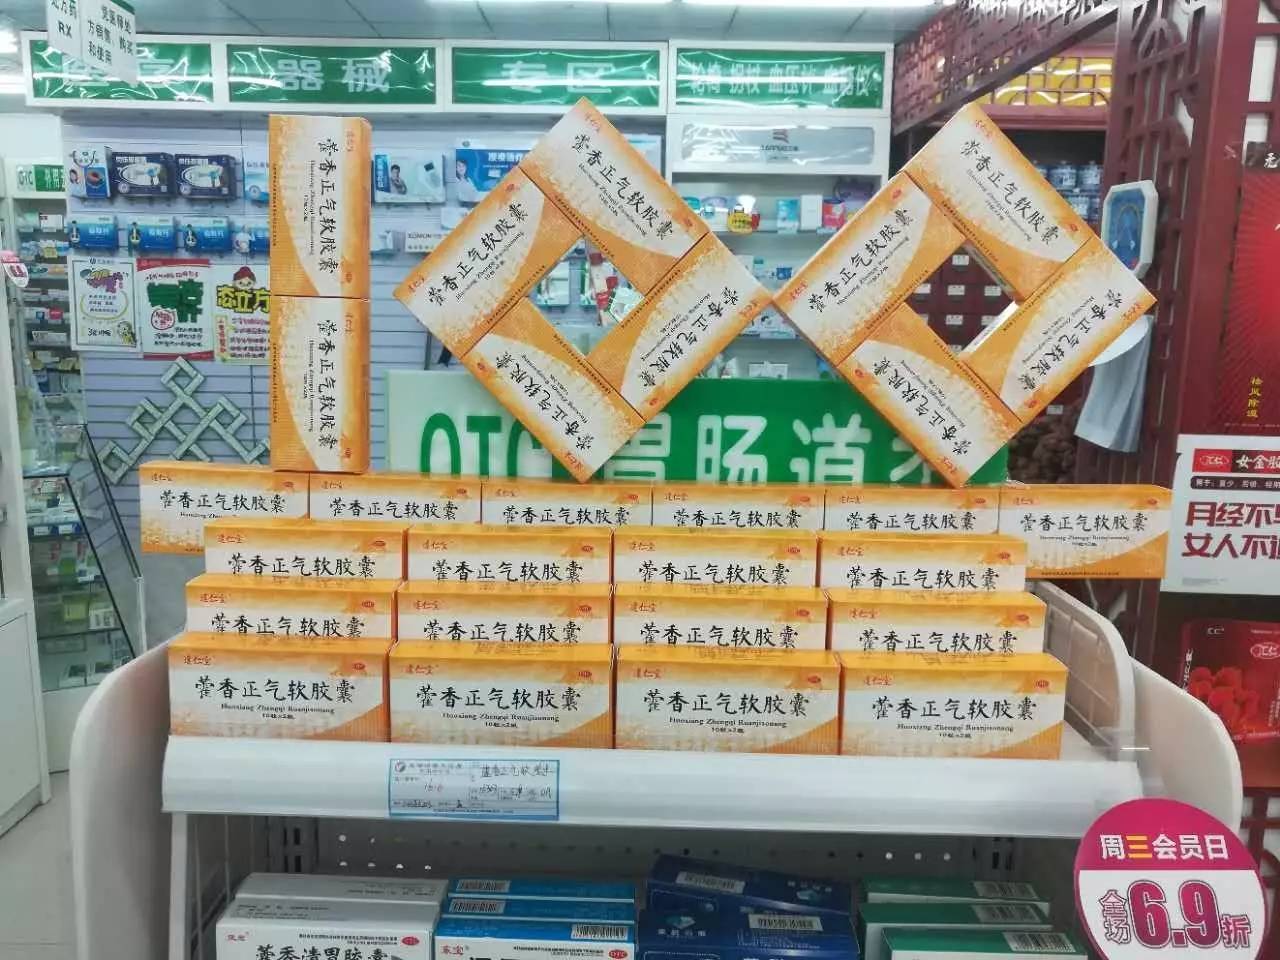 达仁堂藿香正气软胶囊陈列竞赛二